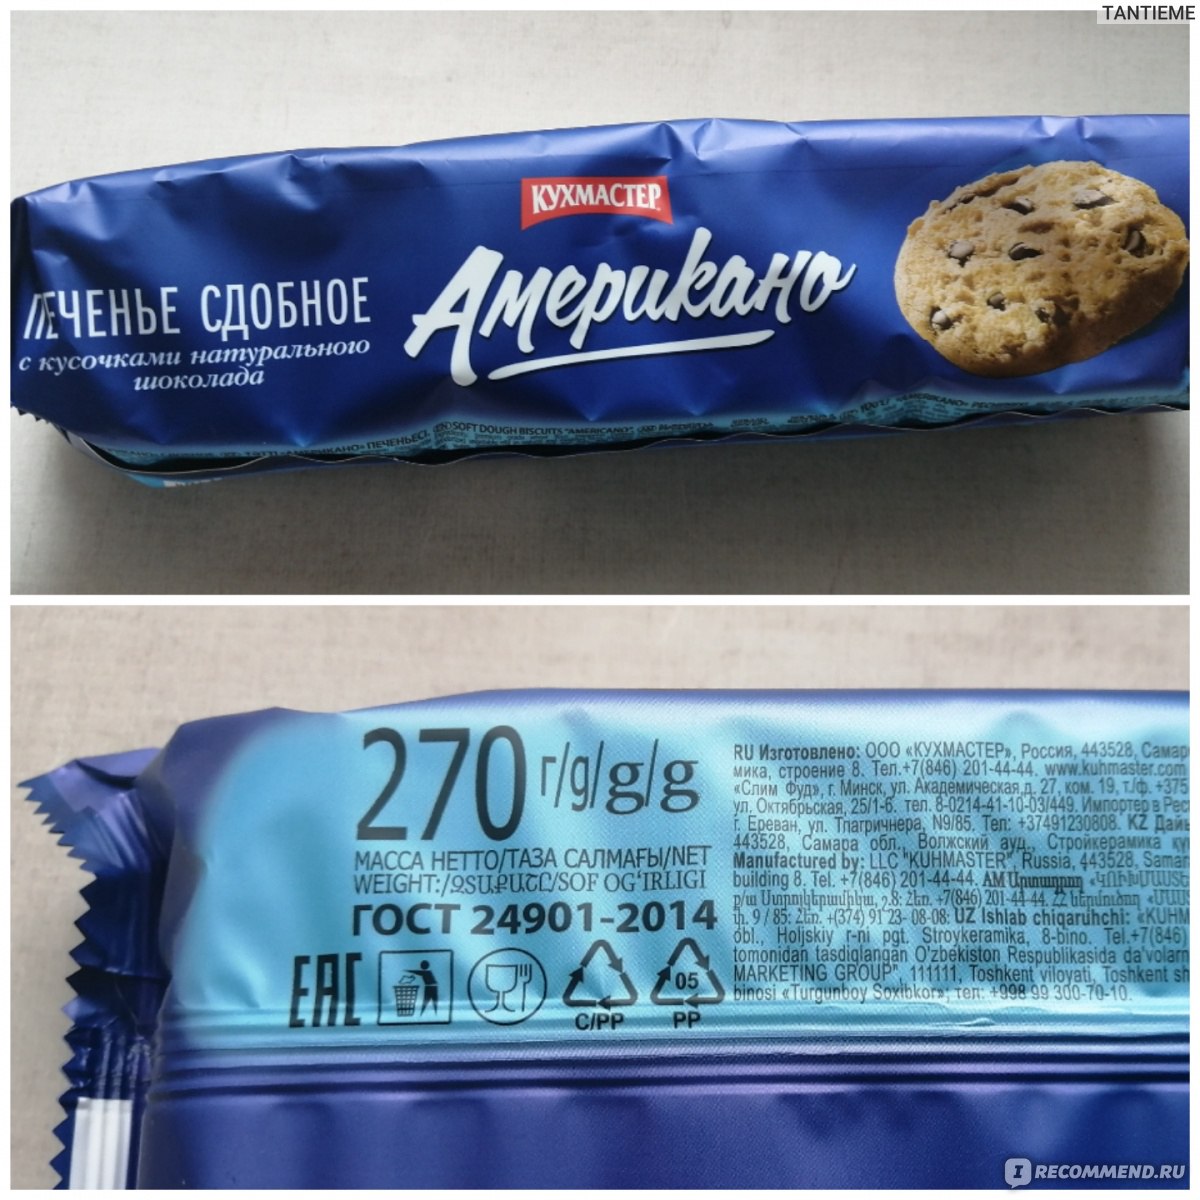 Американское печенье с кусочками шоколада Кухмастер